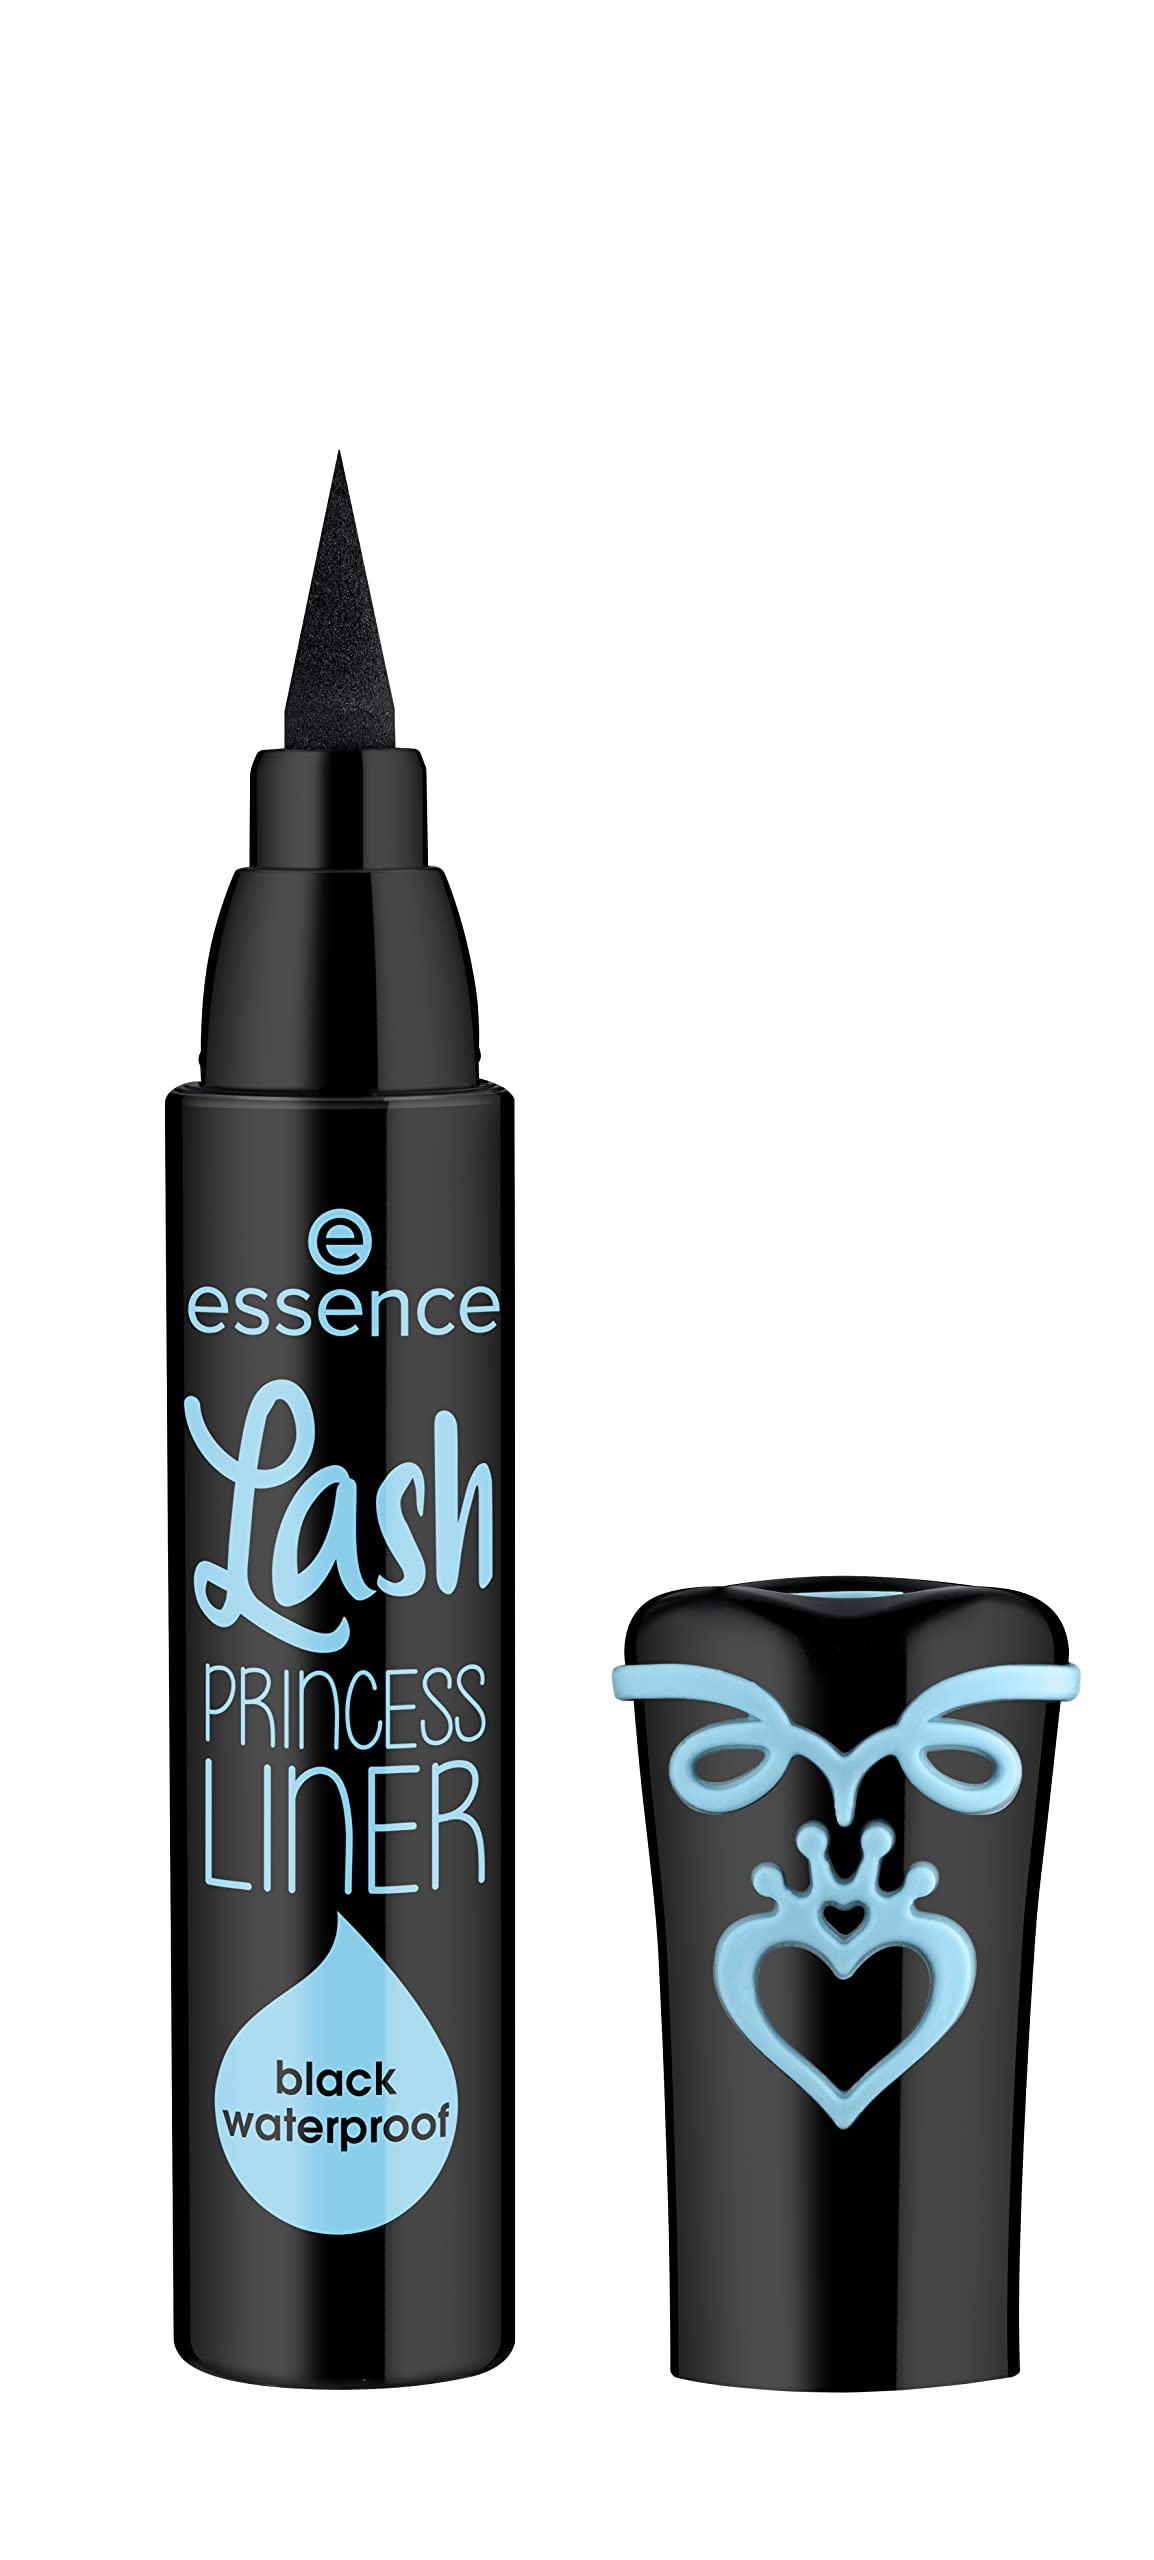 essence Lash Priner Liner Waterproof & Remove Like a Boss Waterproof Eye & Face Makeup Remover Bundle | Vegan & Cruelty Free